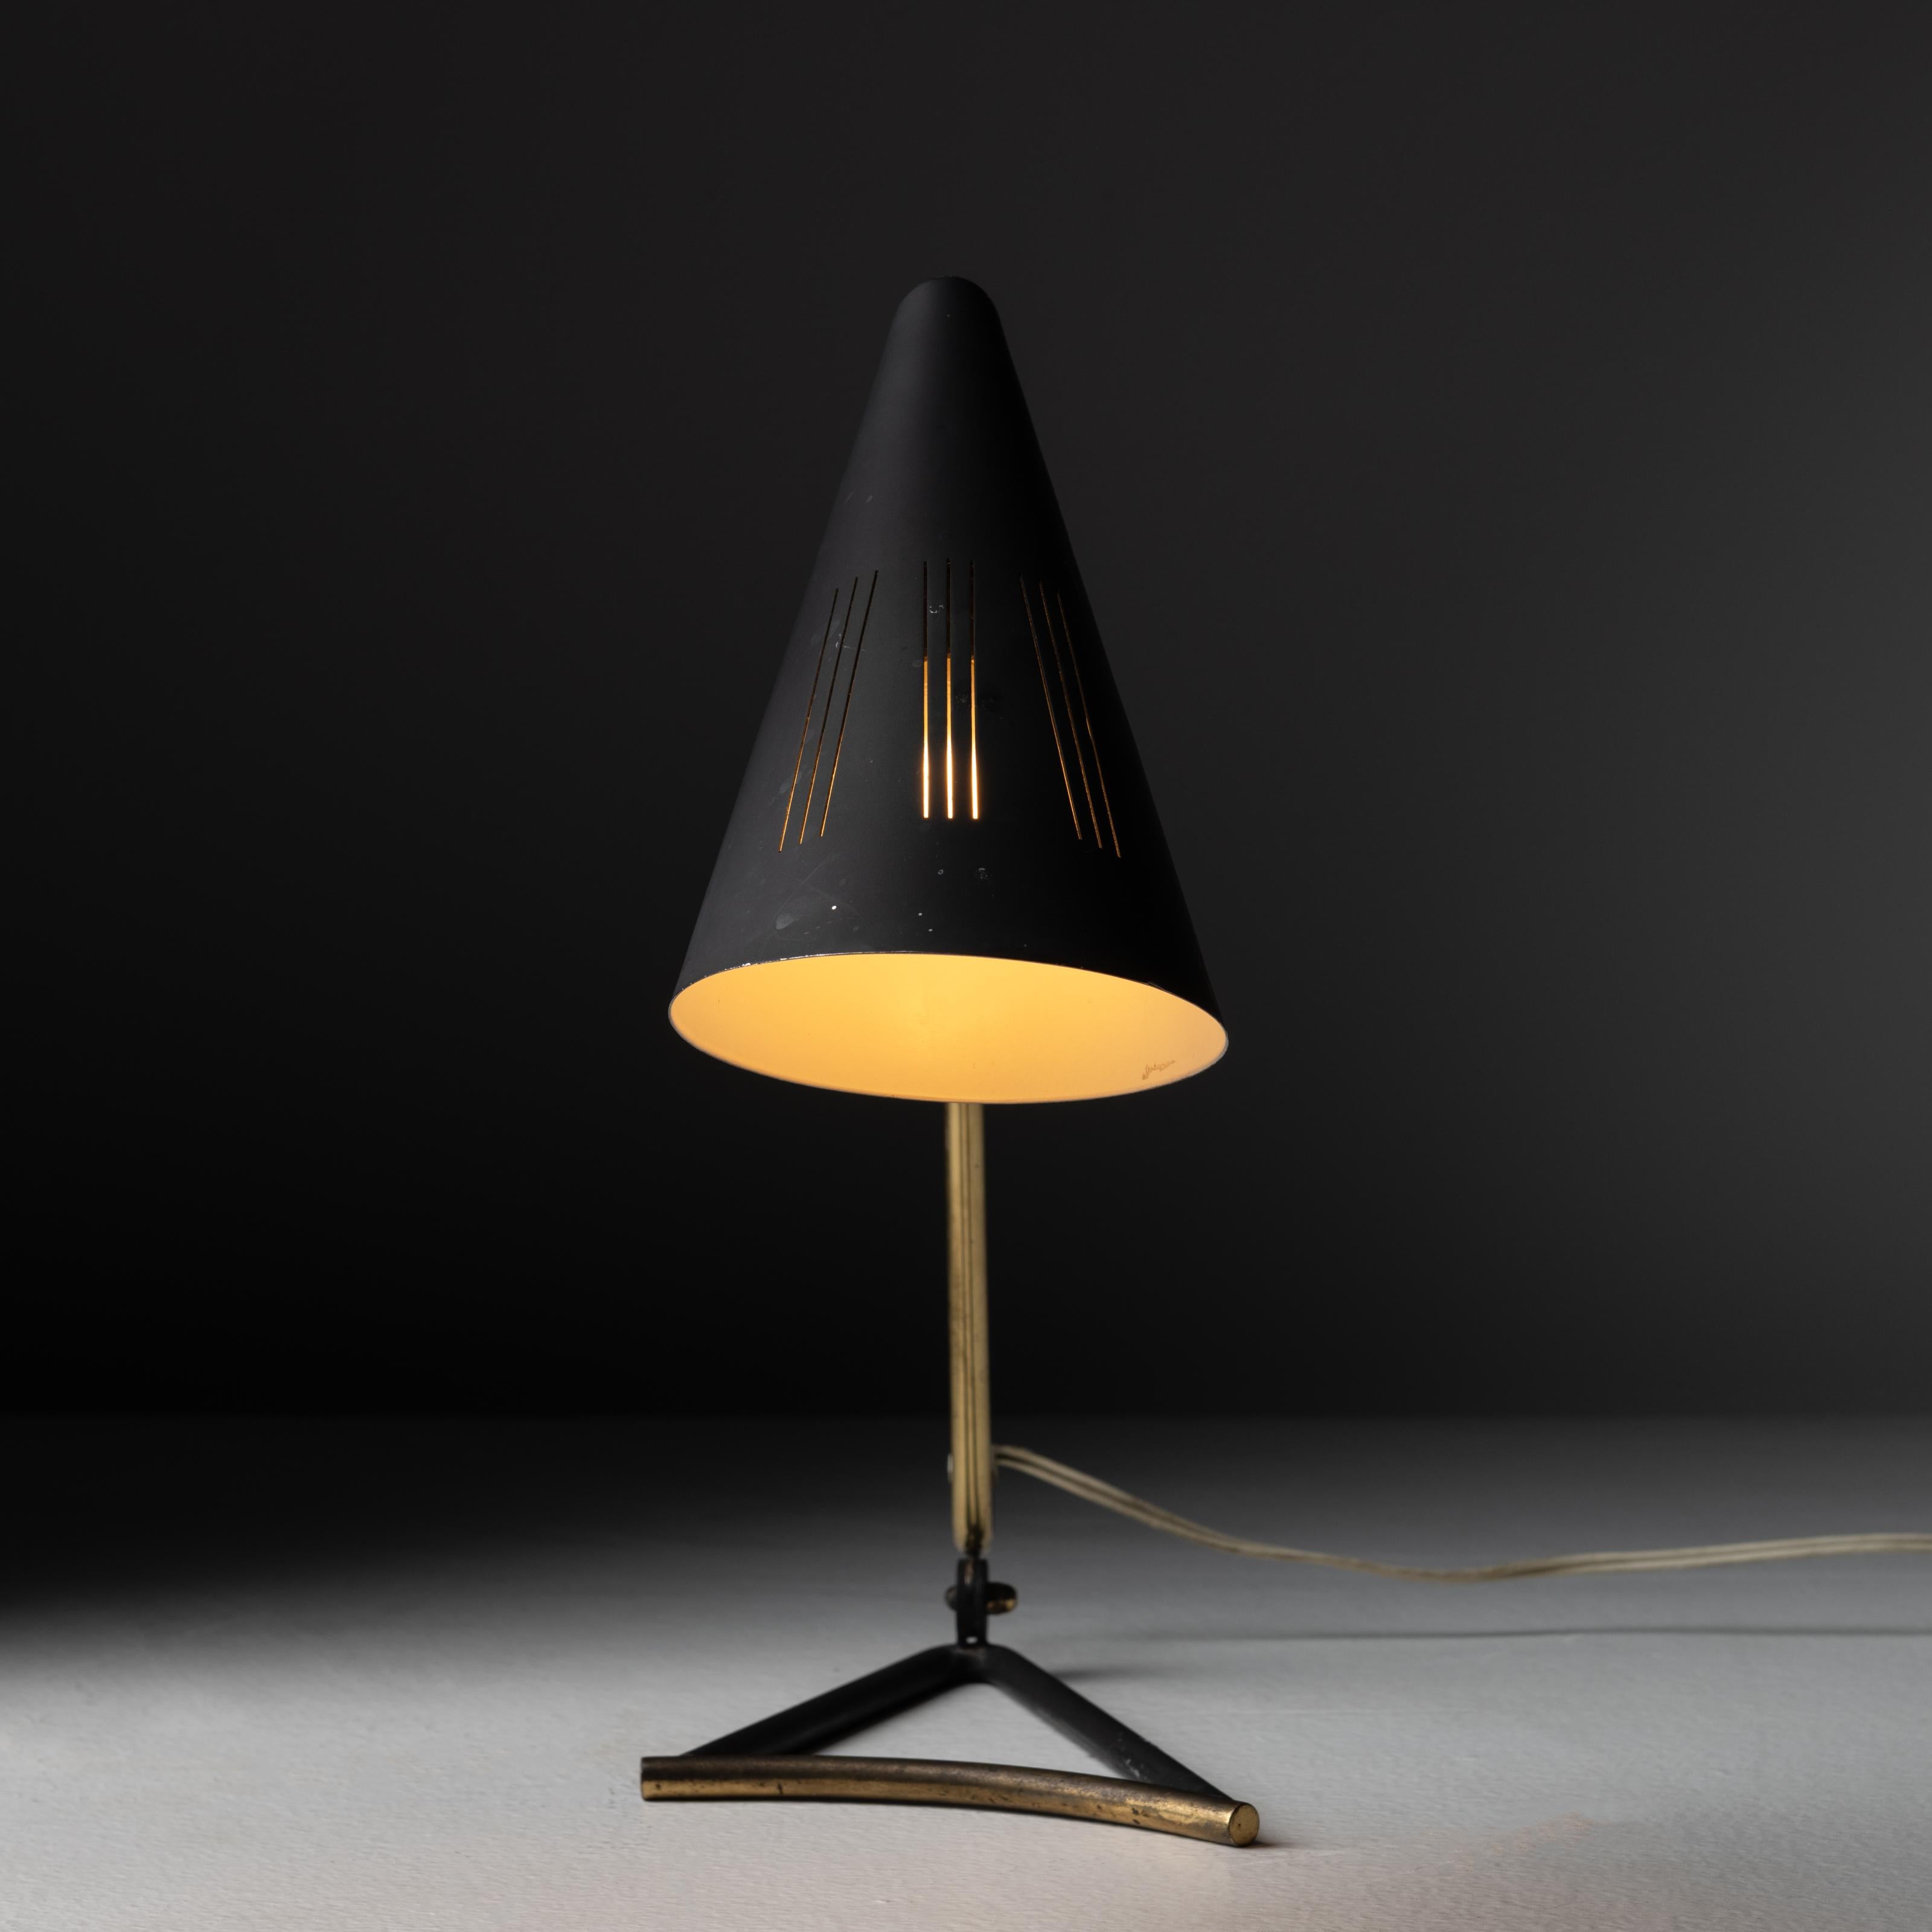 Lampe de table de Svend Aage Holm Sørensen. Conçu et fabriqué au Danemark, vers 1950. Élégante et minimale lampe de table en laiton courbé avec abat-jour émaillé noir, avec trois découpes de lignes parallèles pour une diffusion supplémentaire de la